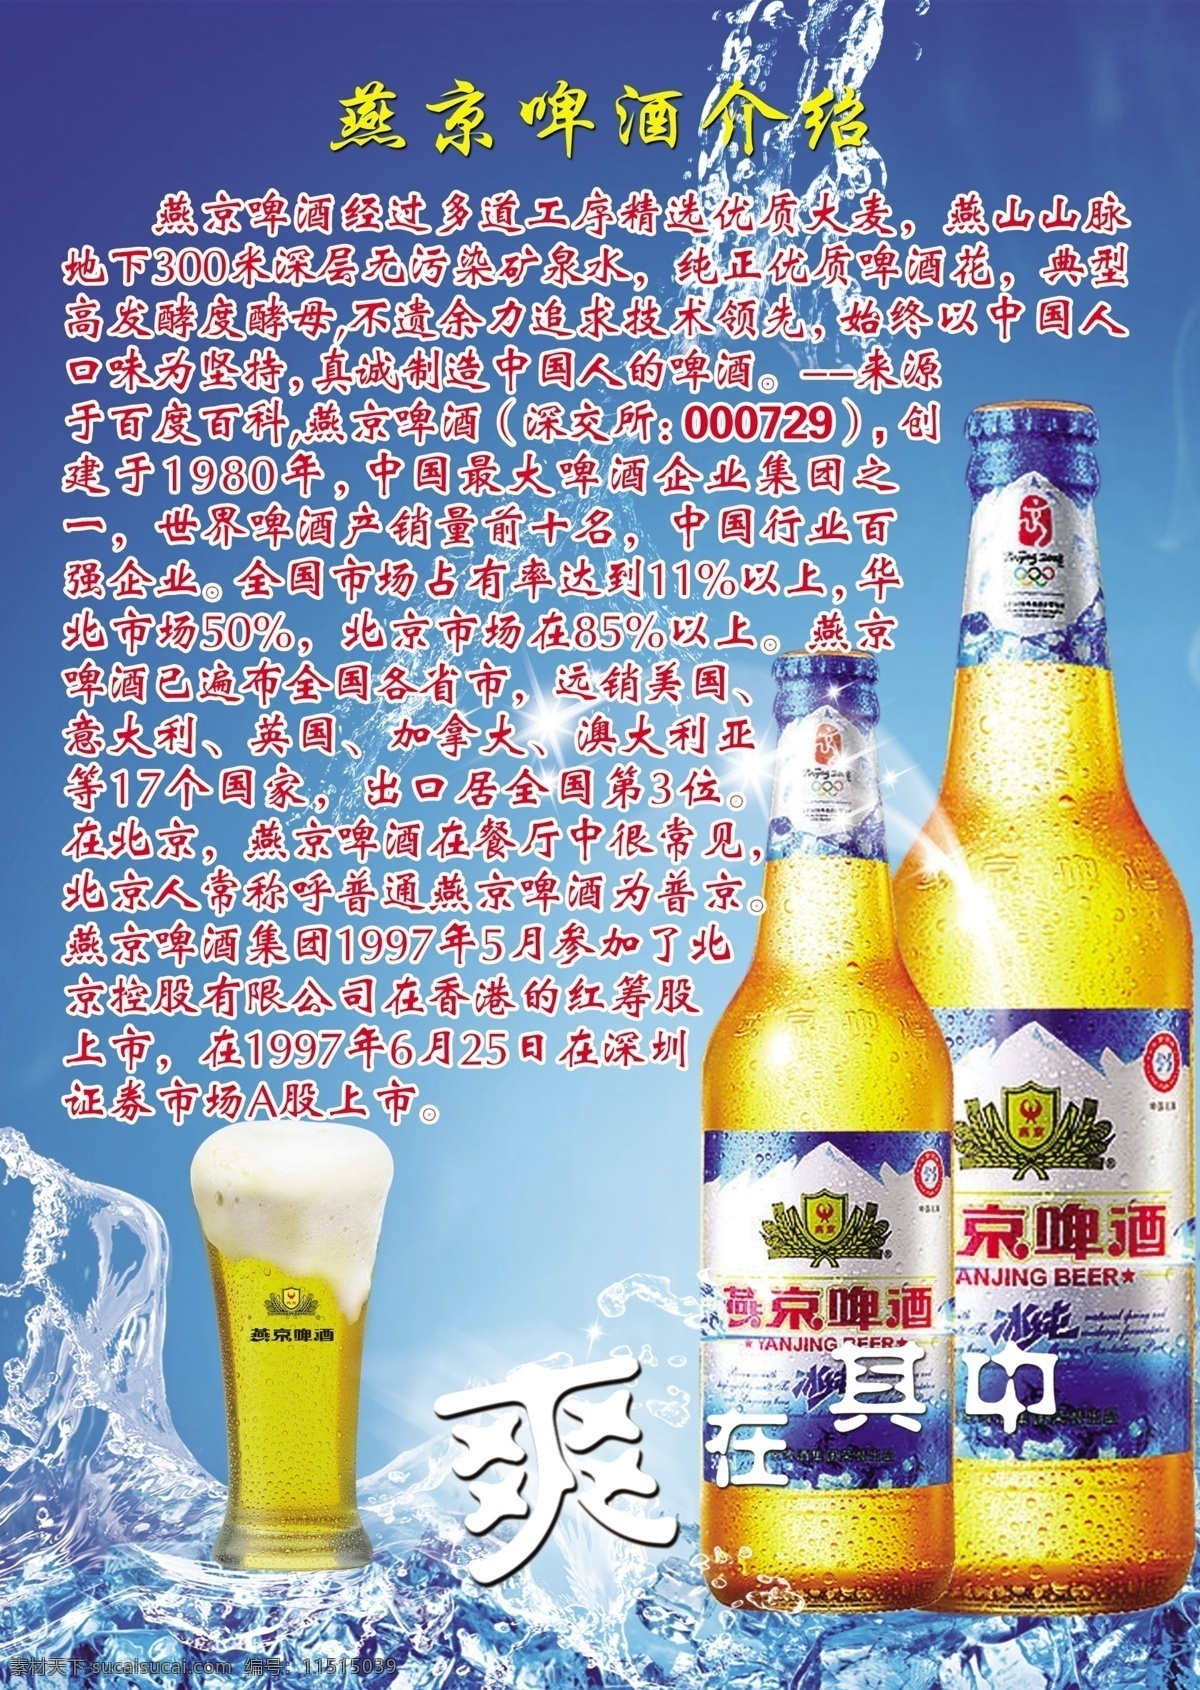 冰块 广告设计模板 酒 啤酒 其他模版 燕京 燕京啤酒 源文件 模板下载 燕京啤酒介绍 燕京啤酒简介 爽在其中